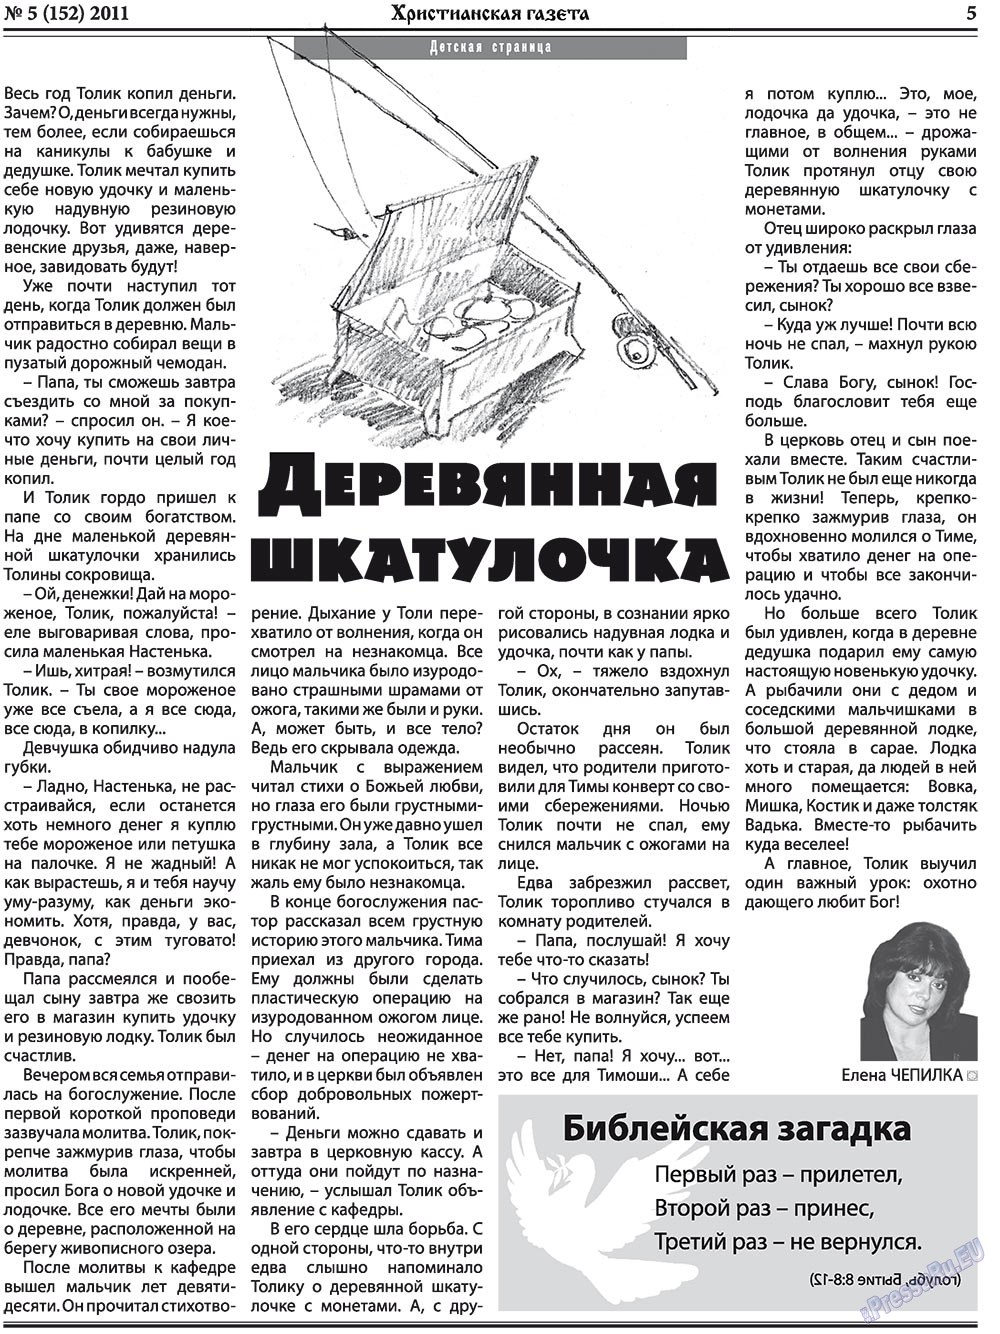 Христианская газета, газета. 2011 №5 стр.5